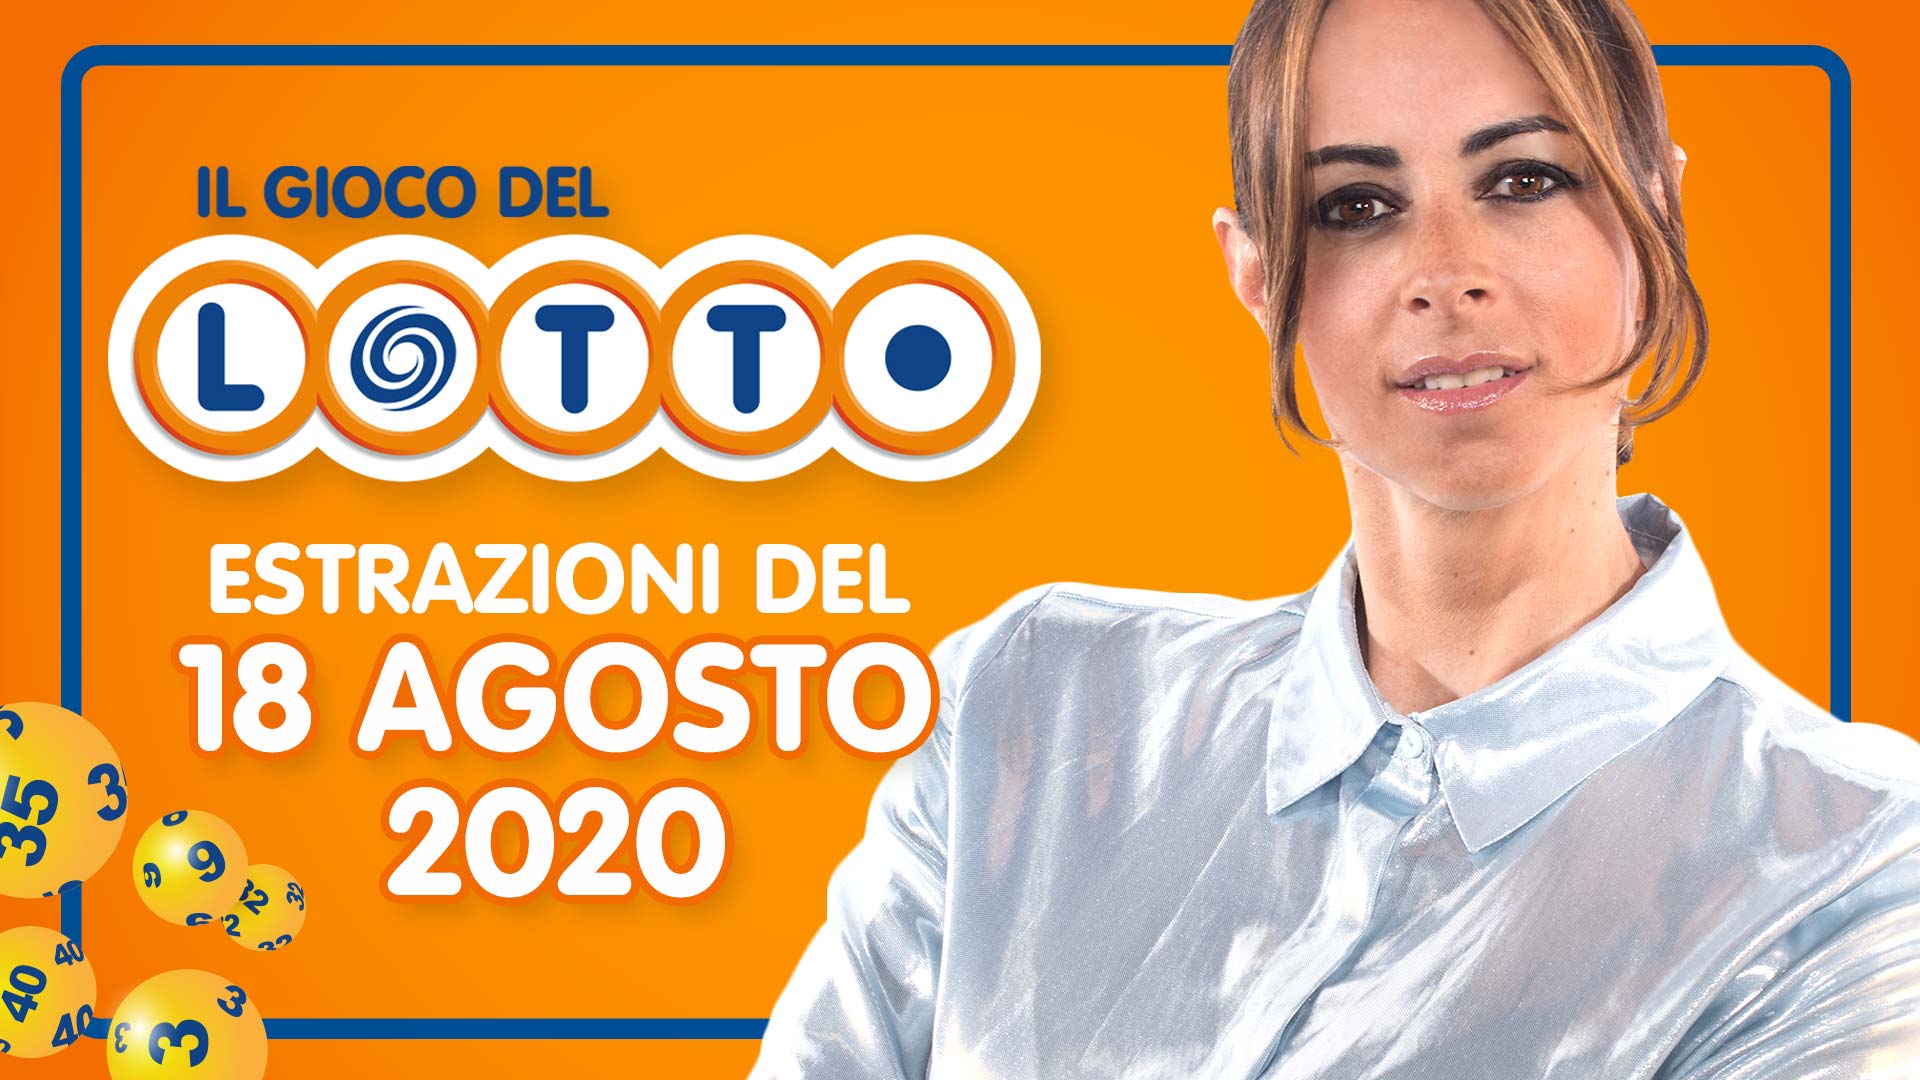 Estrazione Lotto 18 Agosto martedì 2020 Estrazioni del Lotto in diretta 10 e lotto ogni 5 minuti SuperEnalotto Simbolotto Million Day conduce Serena Garitta